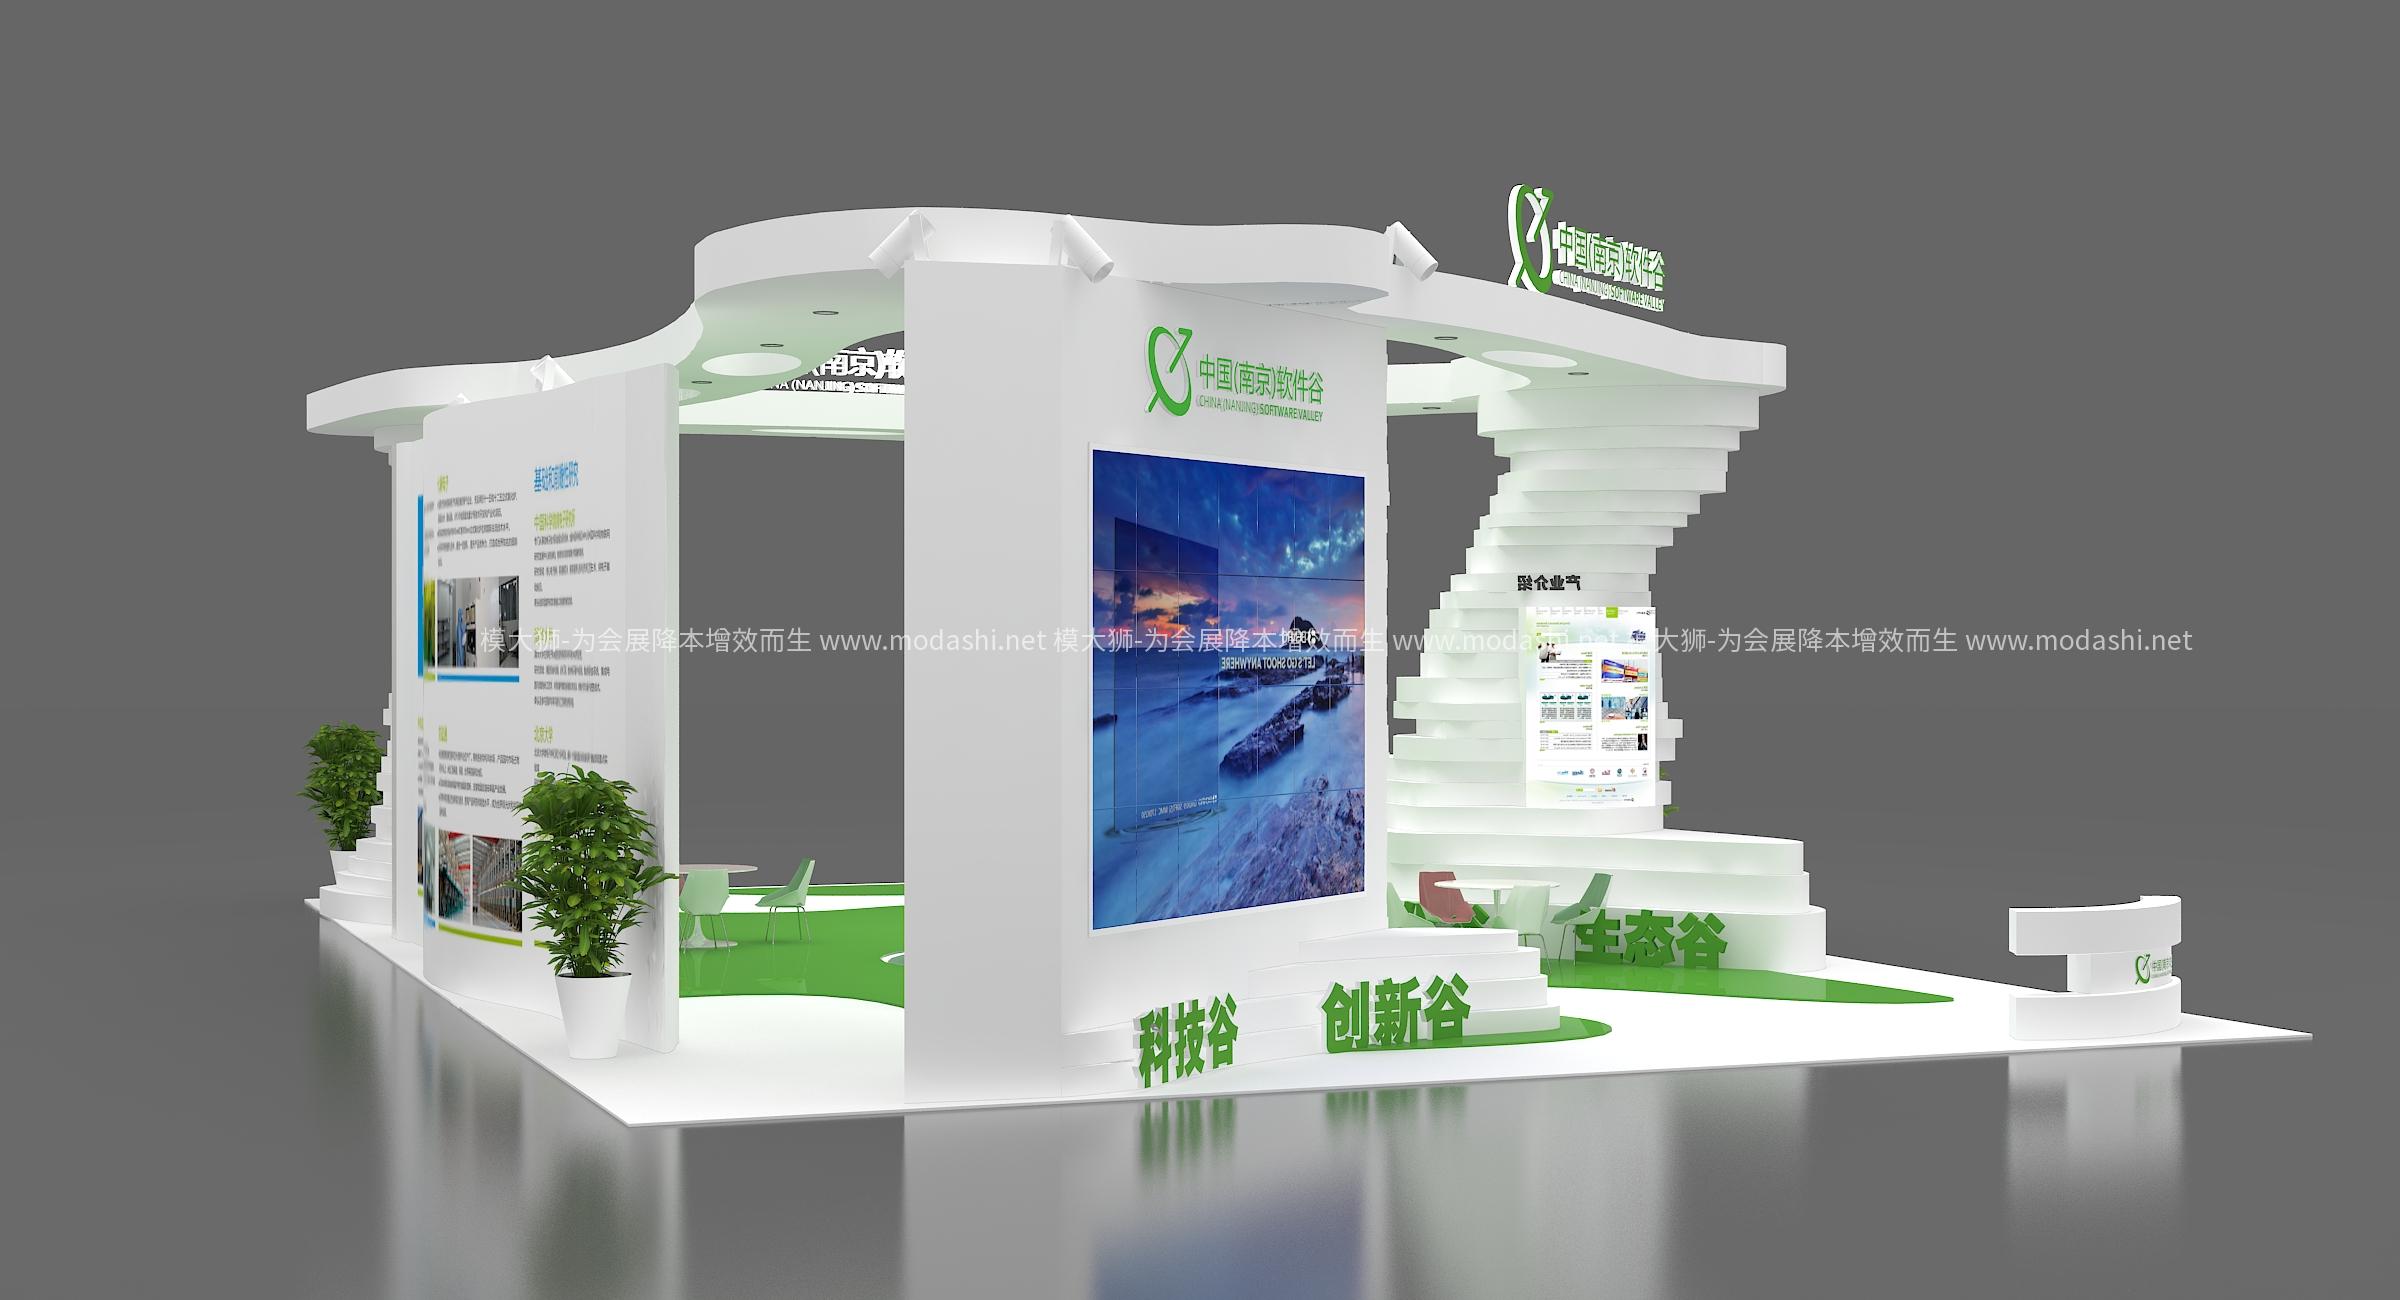 南京软件谷展览模型